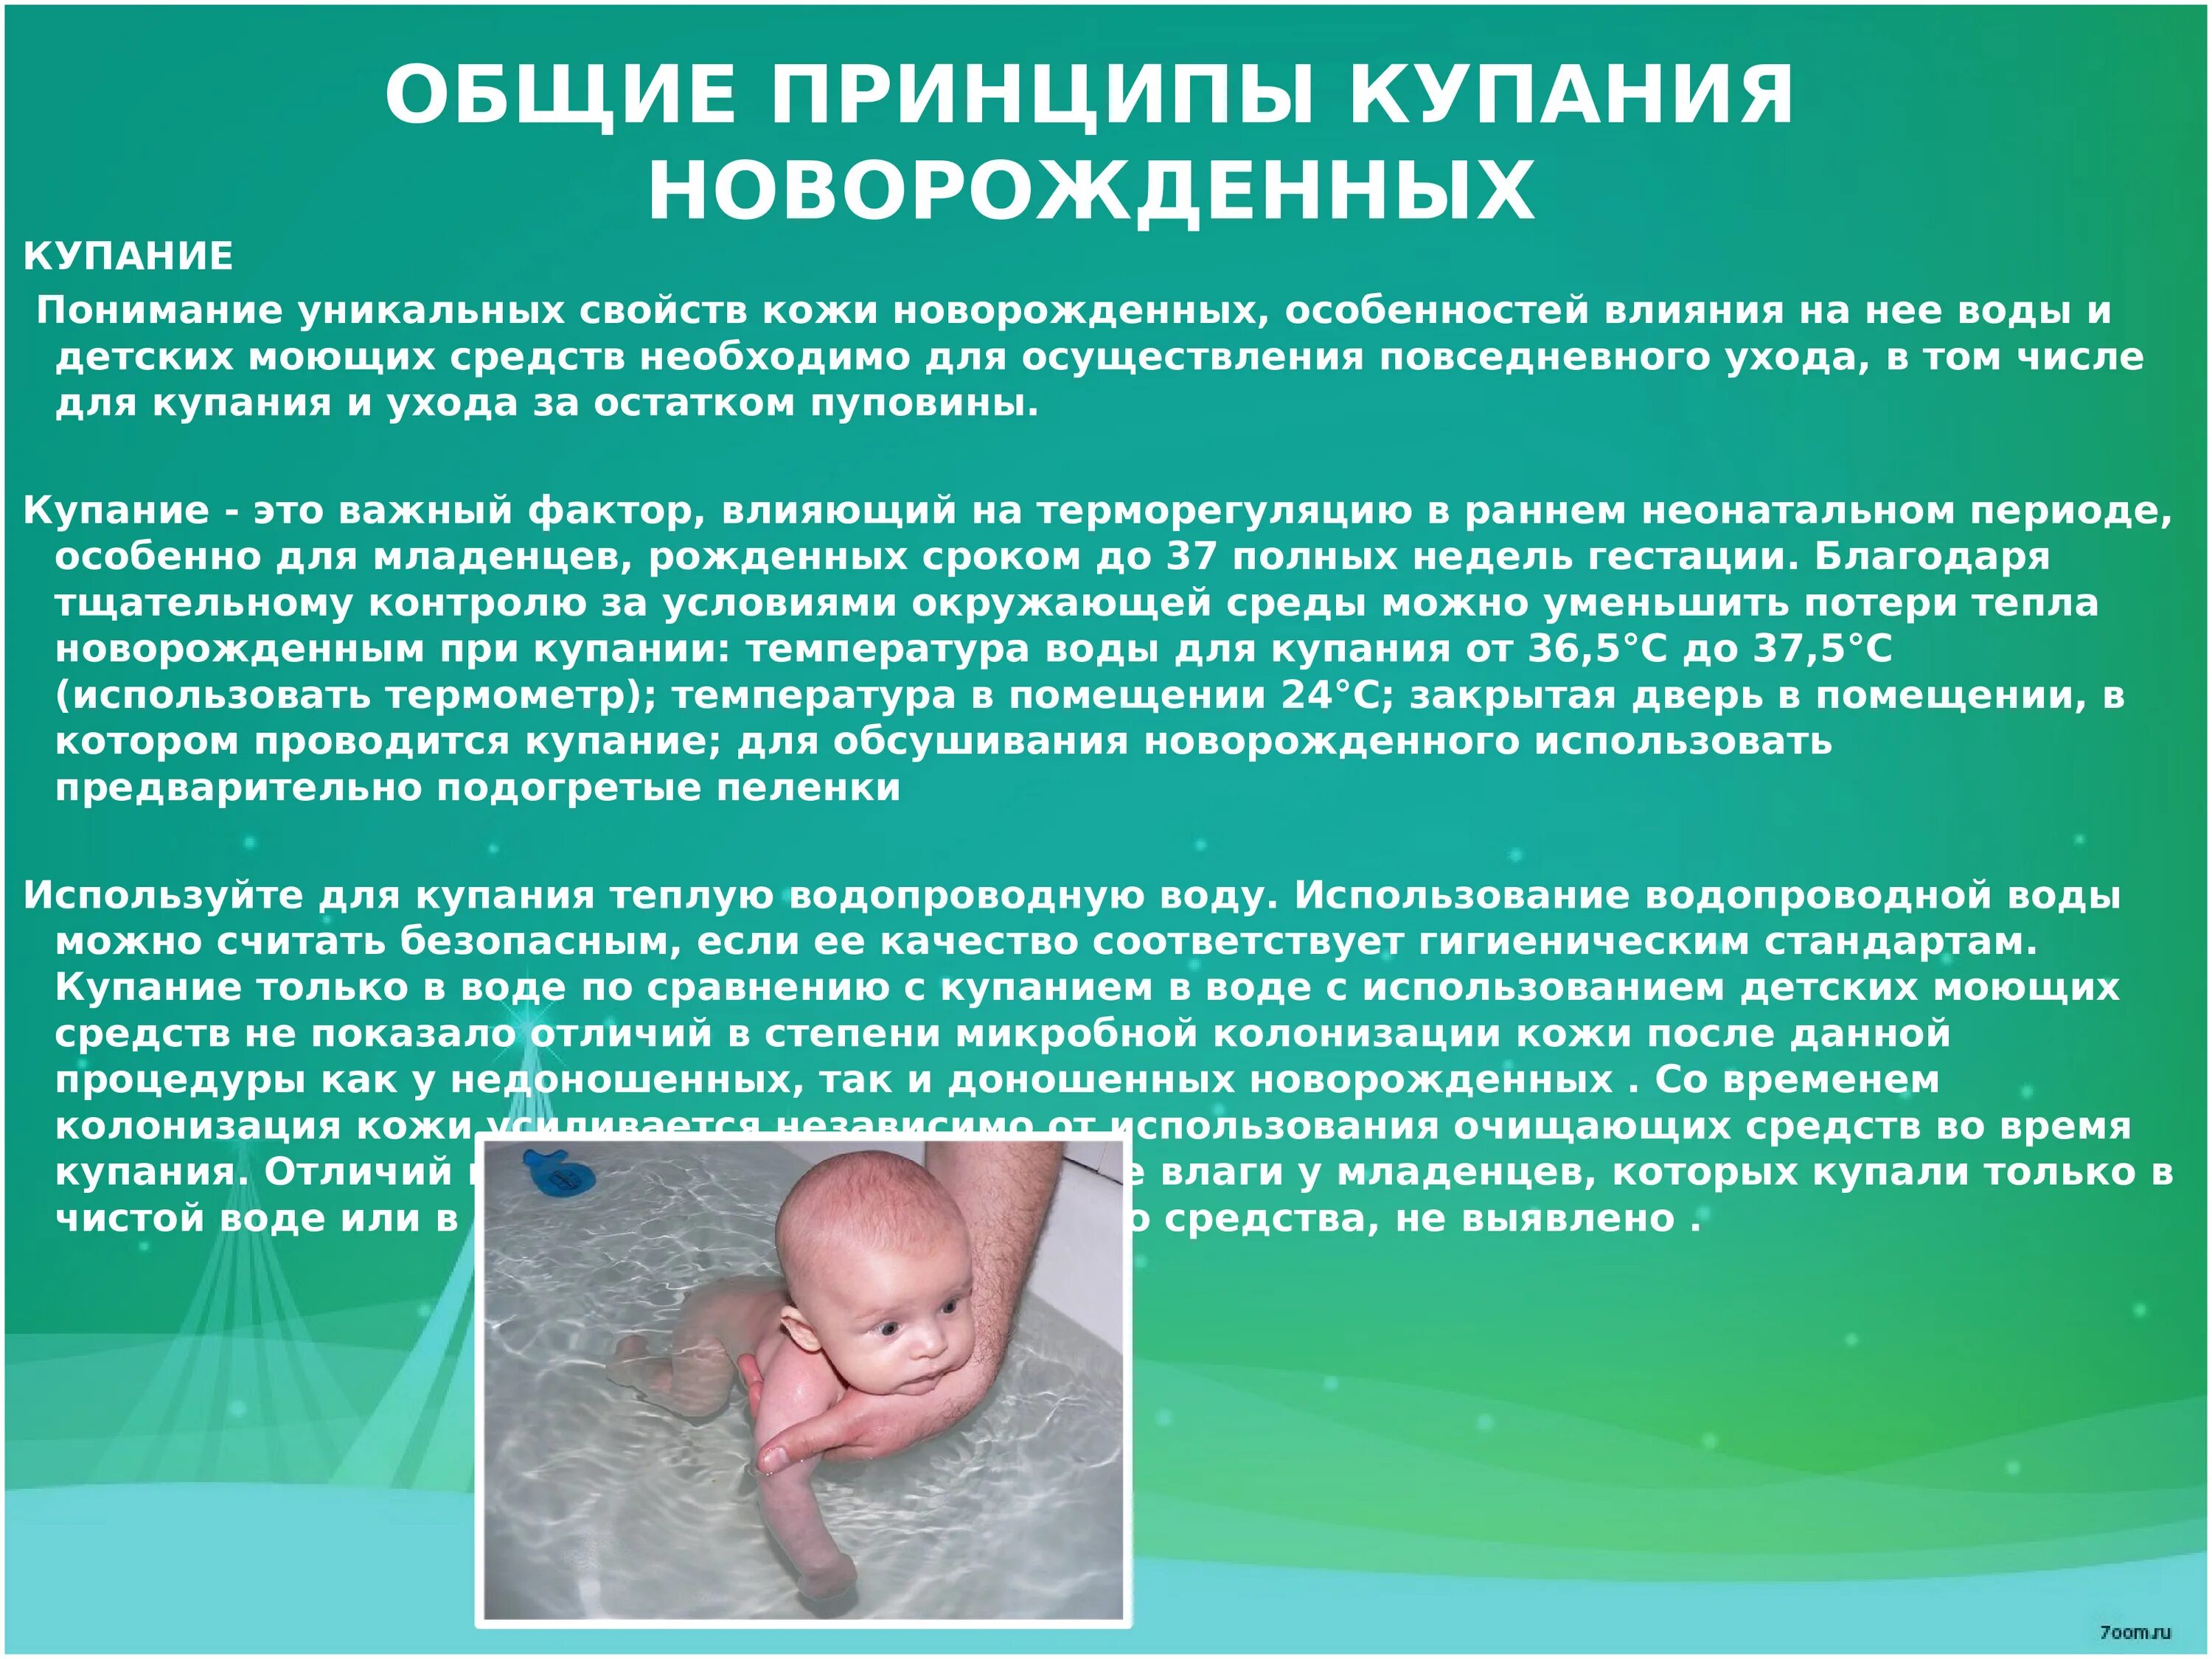 Температура для купания новорожденного ребенка. Температура воды для купания новорожденного. Температура воды для купания новорожденных детей. Купание новорожденного рекомендации. Первое купание новорожденного температура